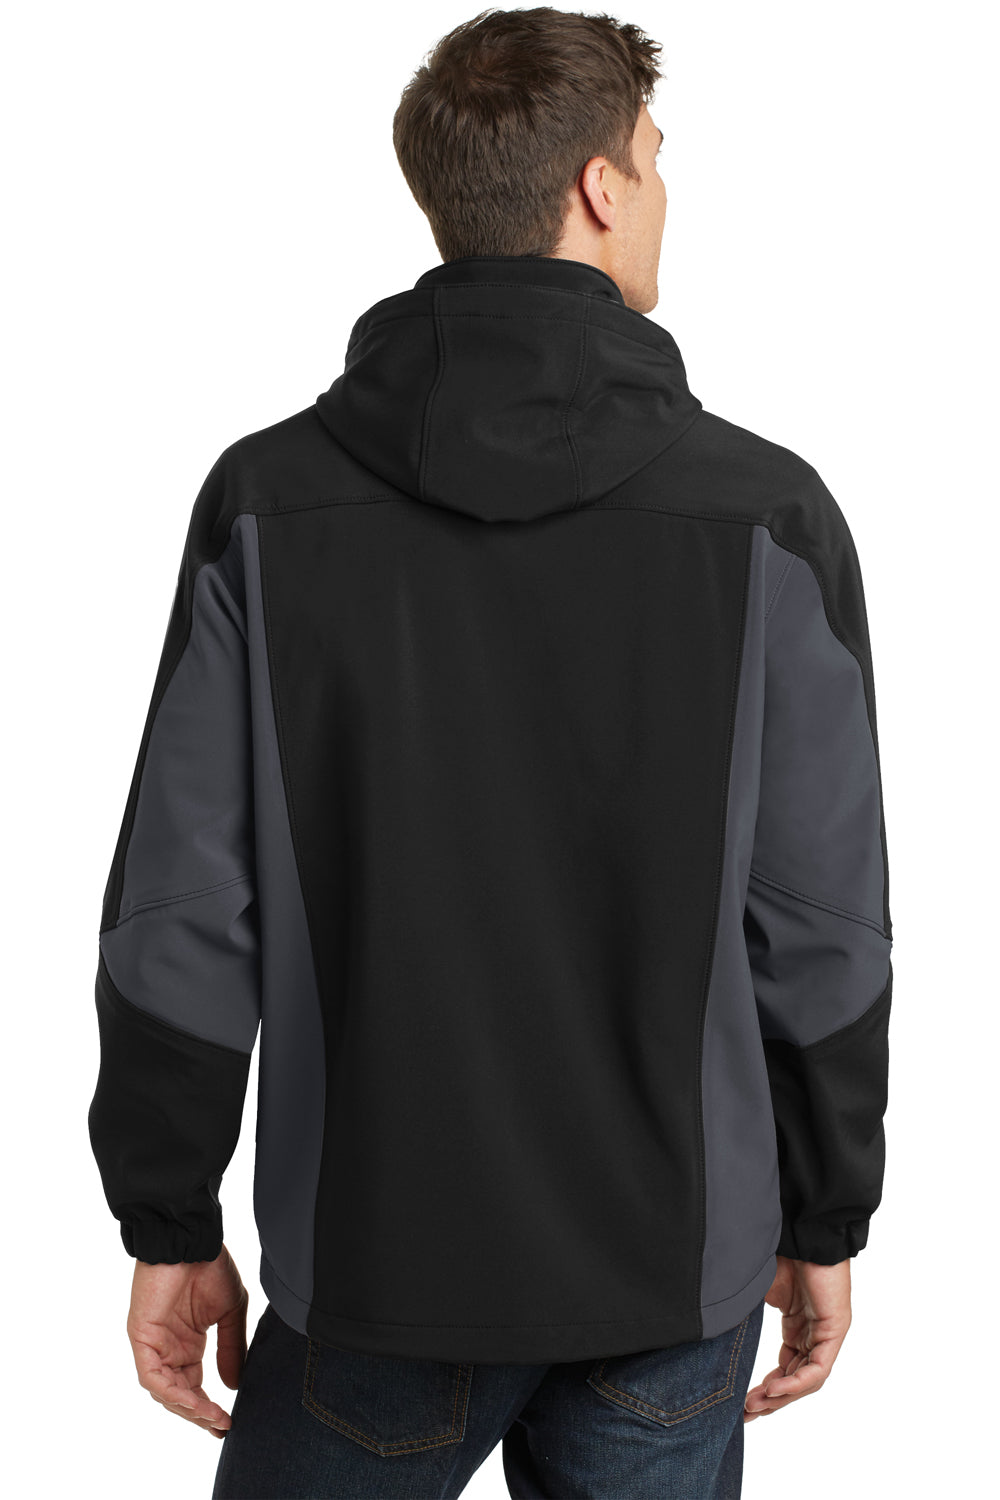 Port Authority J798 Mens Waterproof Full Zip Hooded Jacket Black/Grey Back